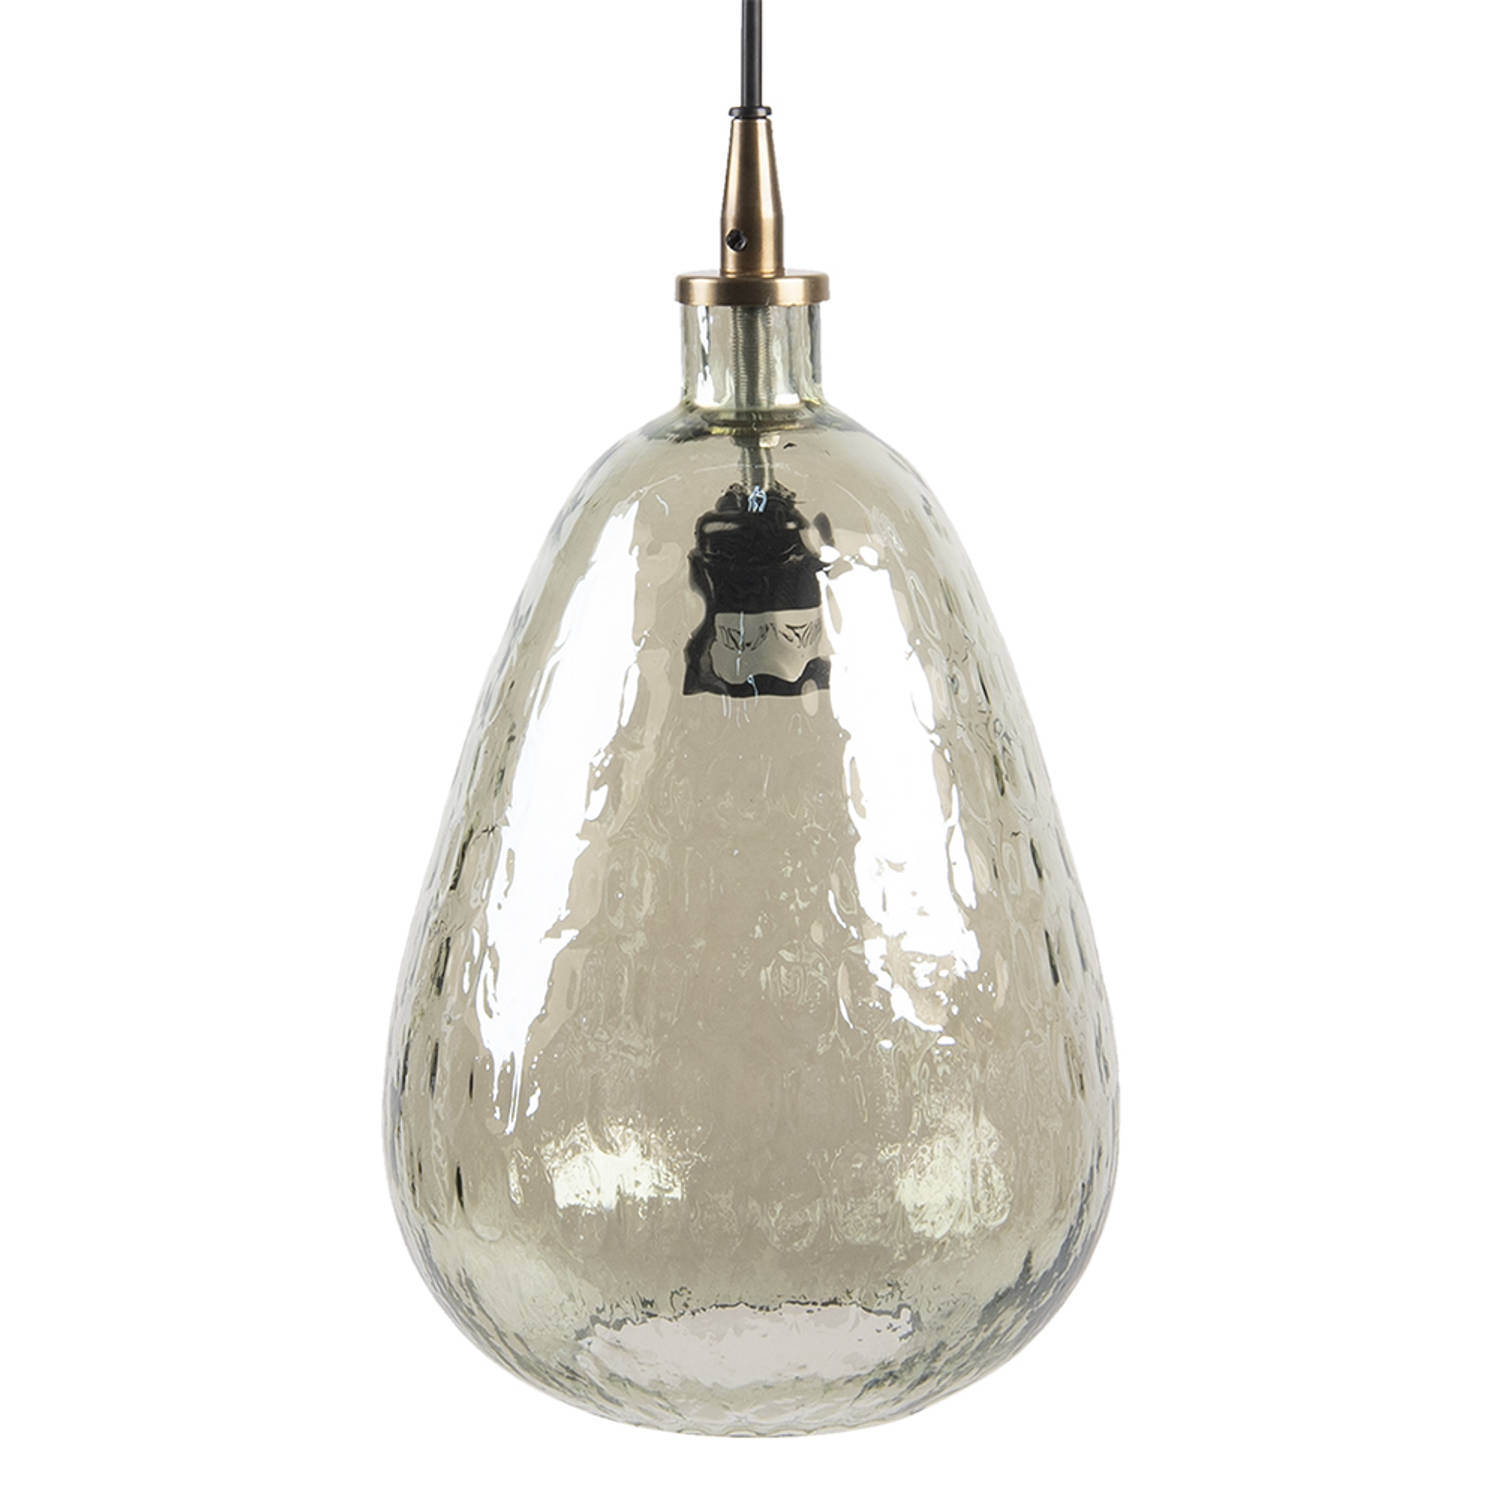 HAES DECO - Hanglamp - Natural Cosy - Glazen moderne Lamp, formaat Ø 19x35 cm - Groen Glas - Hanglamp Eettafel, Hanglamp Eetkamer